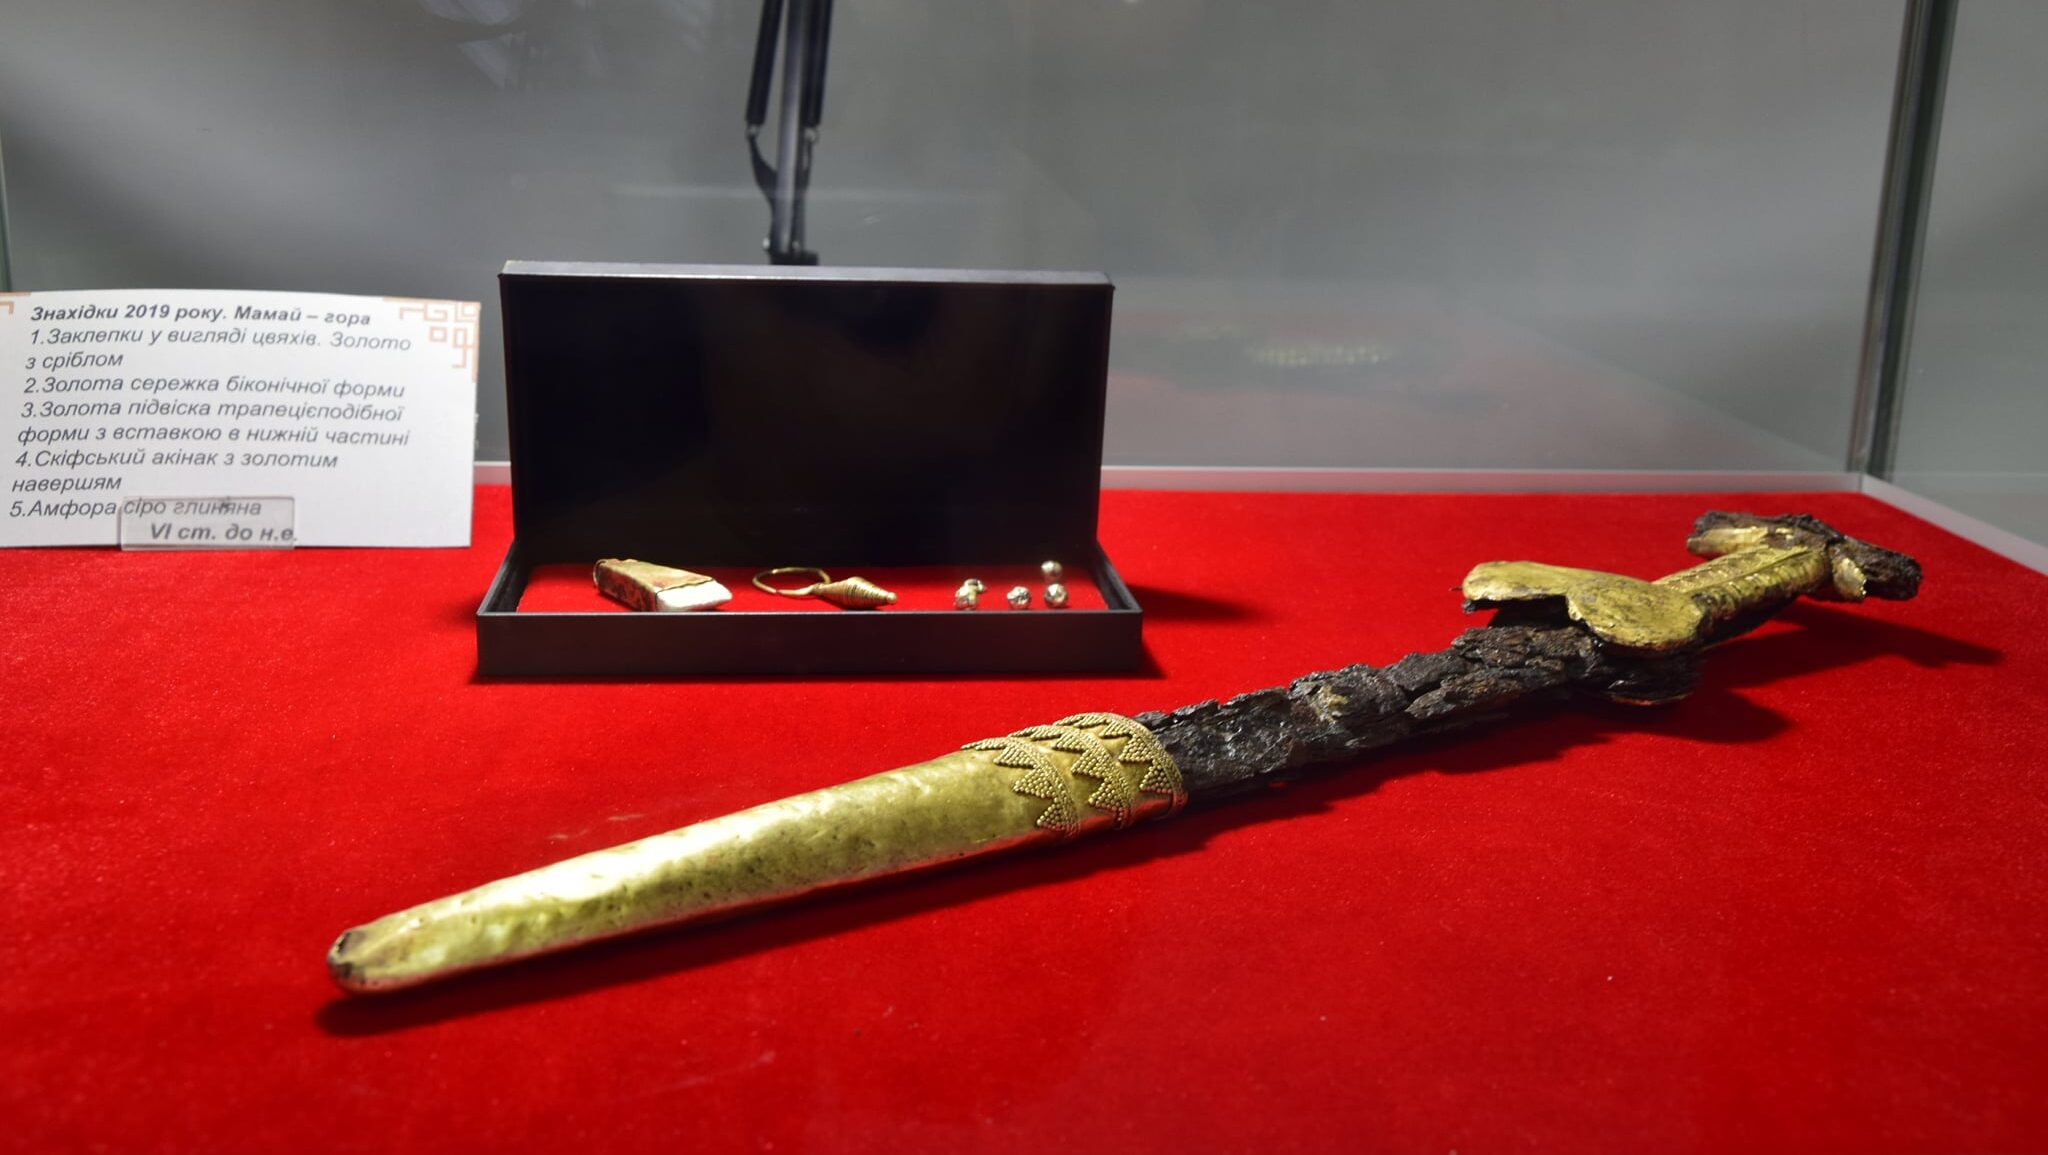 У музеї у Запорізькій області вперше показали скіфський меч, який знайшли на Мамай-горі, – ФОТО 